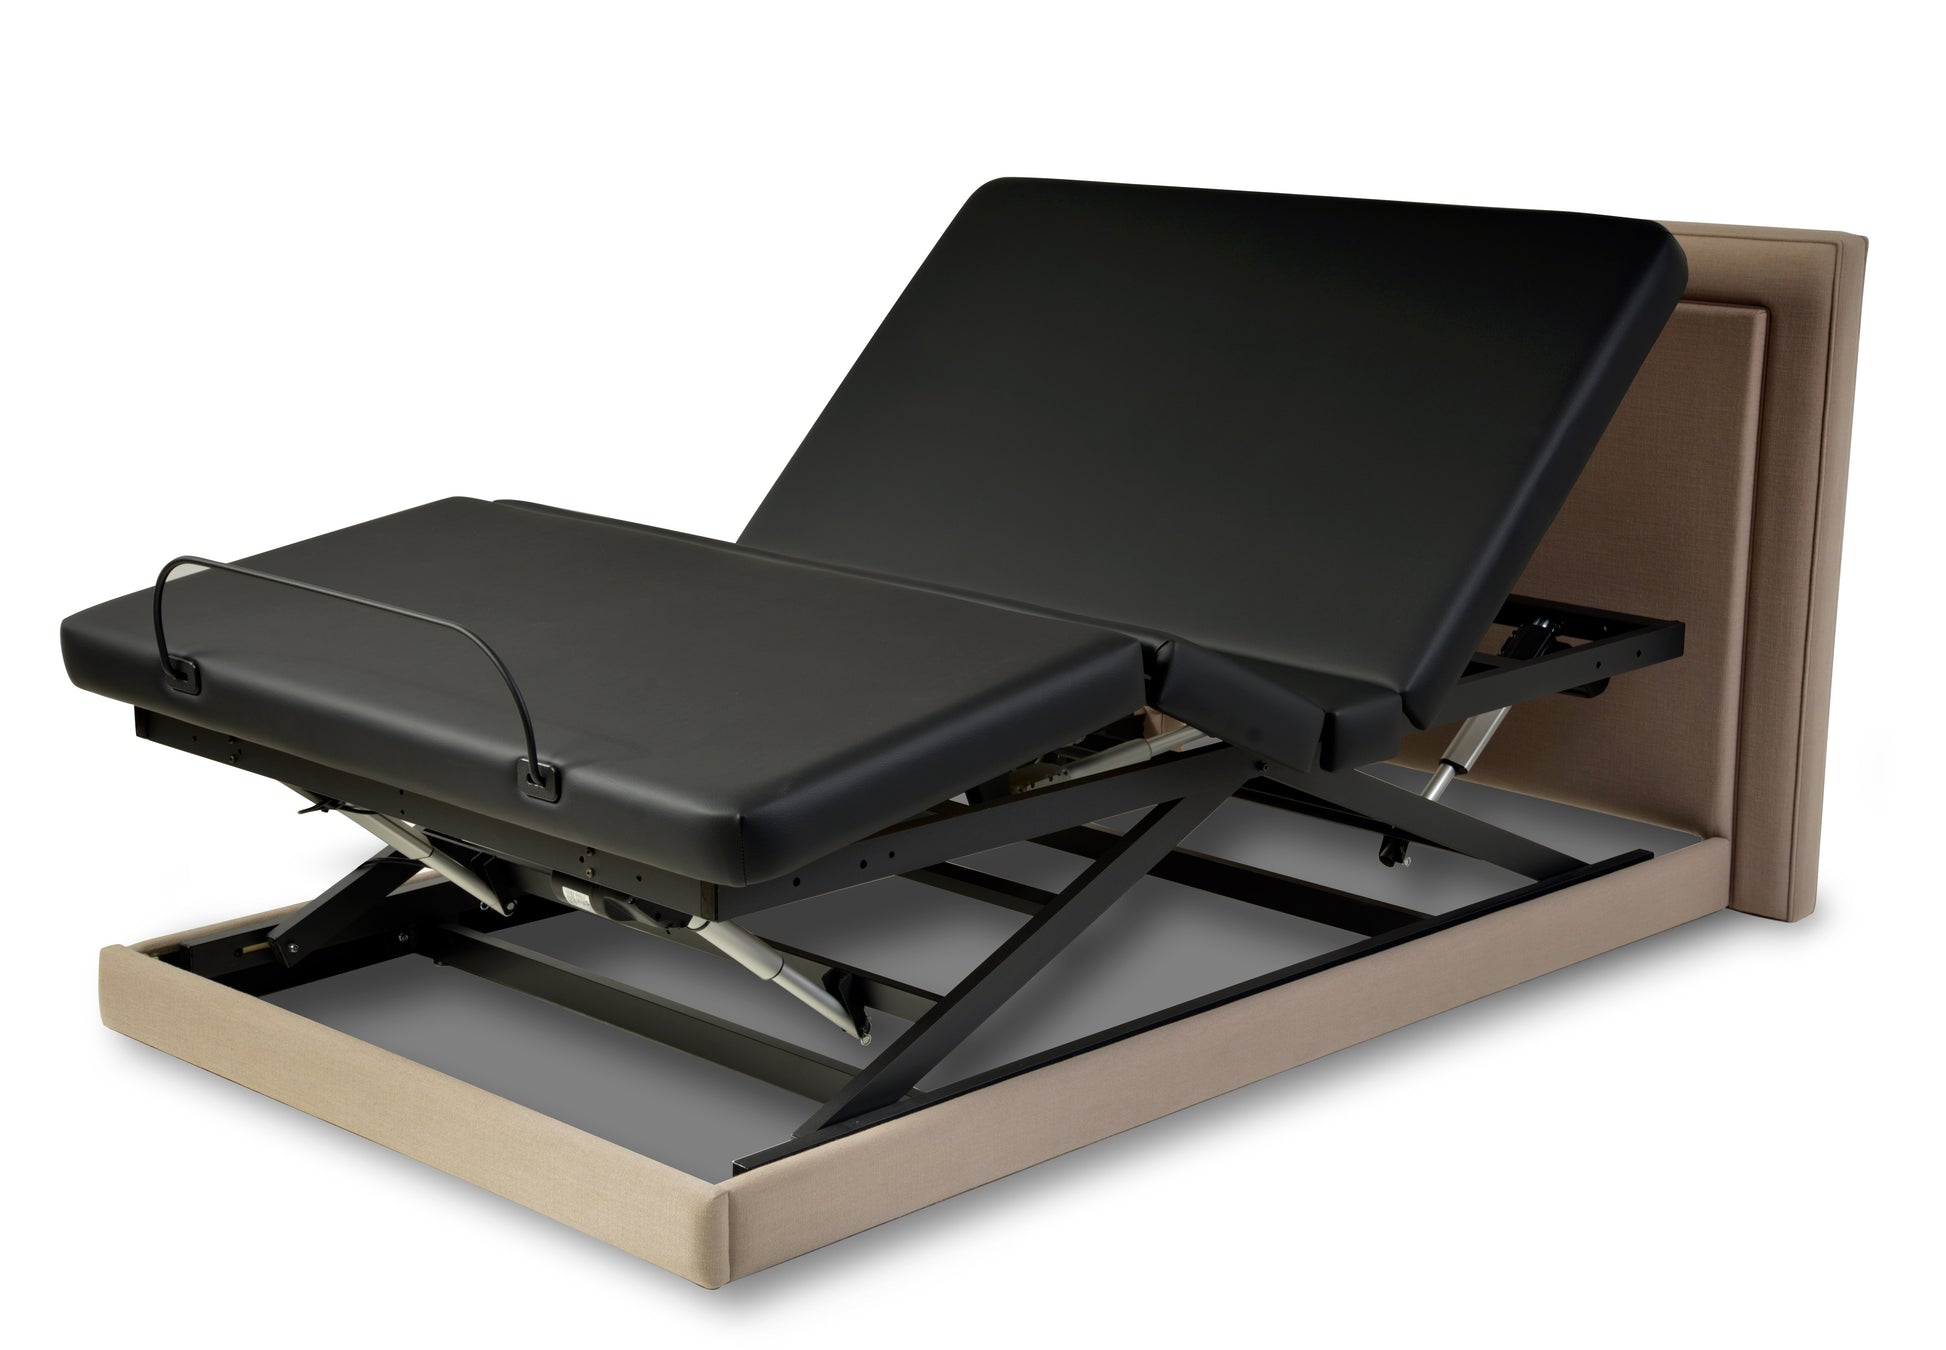 Assured Comfort Platform Series Hi-Low Adjustable Homecare Bed. 